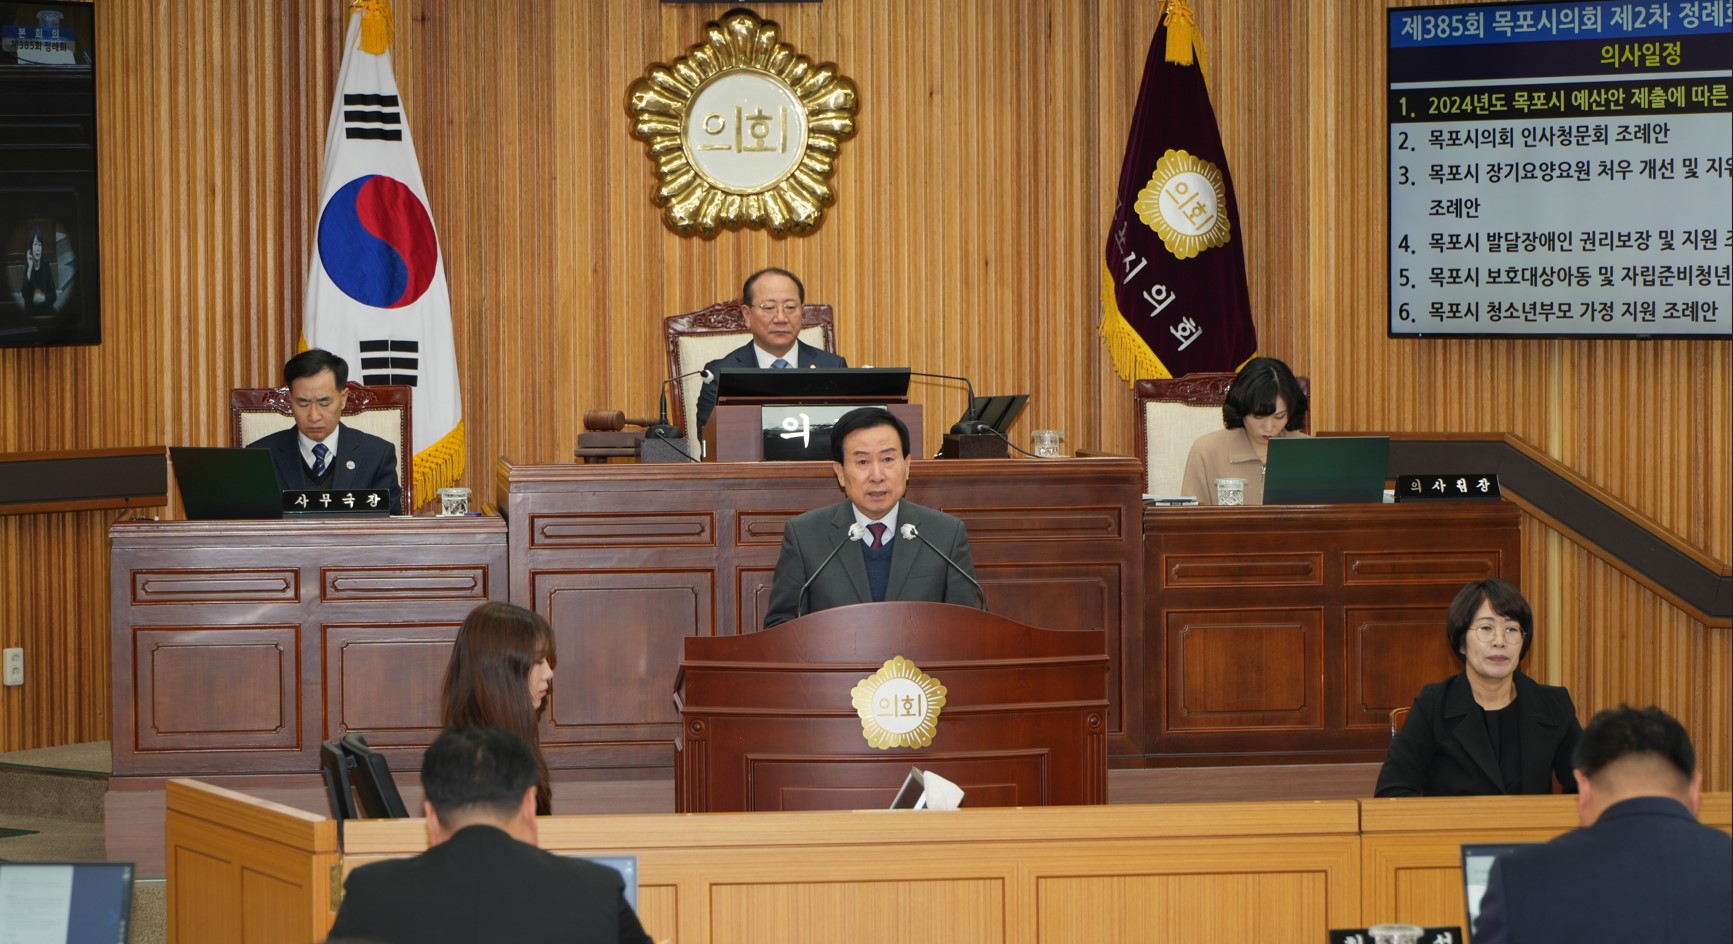 박홍률 목포시장, 민생안정과 현안해결에 역량 집중